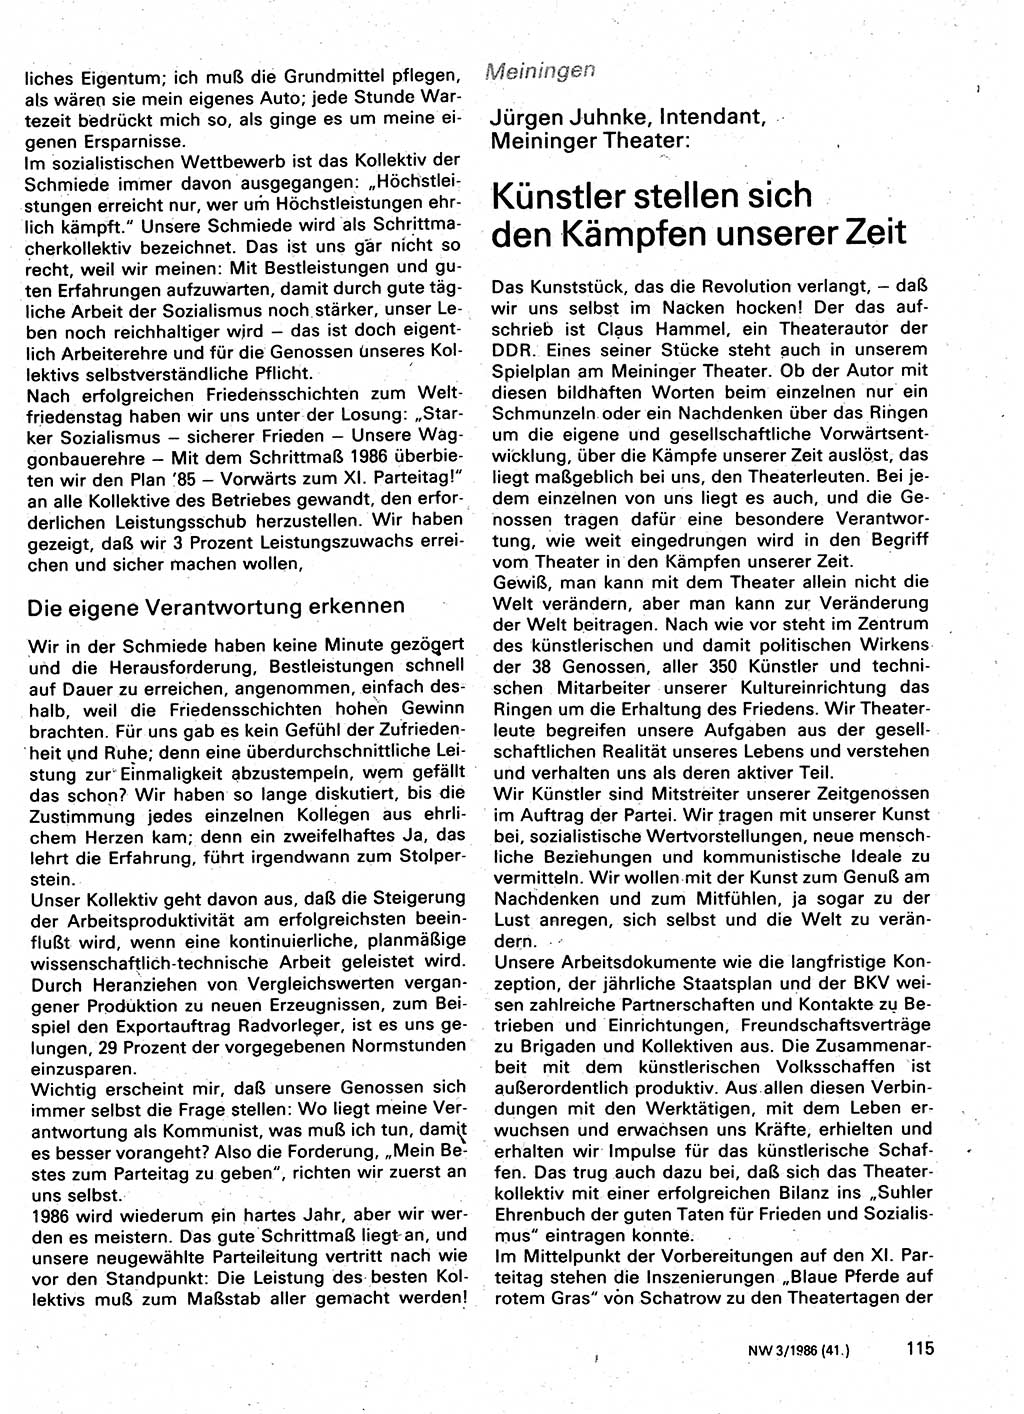 Neuer Weg (NW), Organ des Zentralkomitees (ZK) der SED (Sozialistische Einheitspartei Deutschlands) für Fragen des Parteilebens, 41. Jahrgang [Deutsche Demokratische Republik (DDR)] 1986, Seite 115 (NW ZK SED DDR 1986, S. 115)